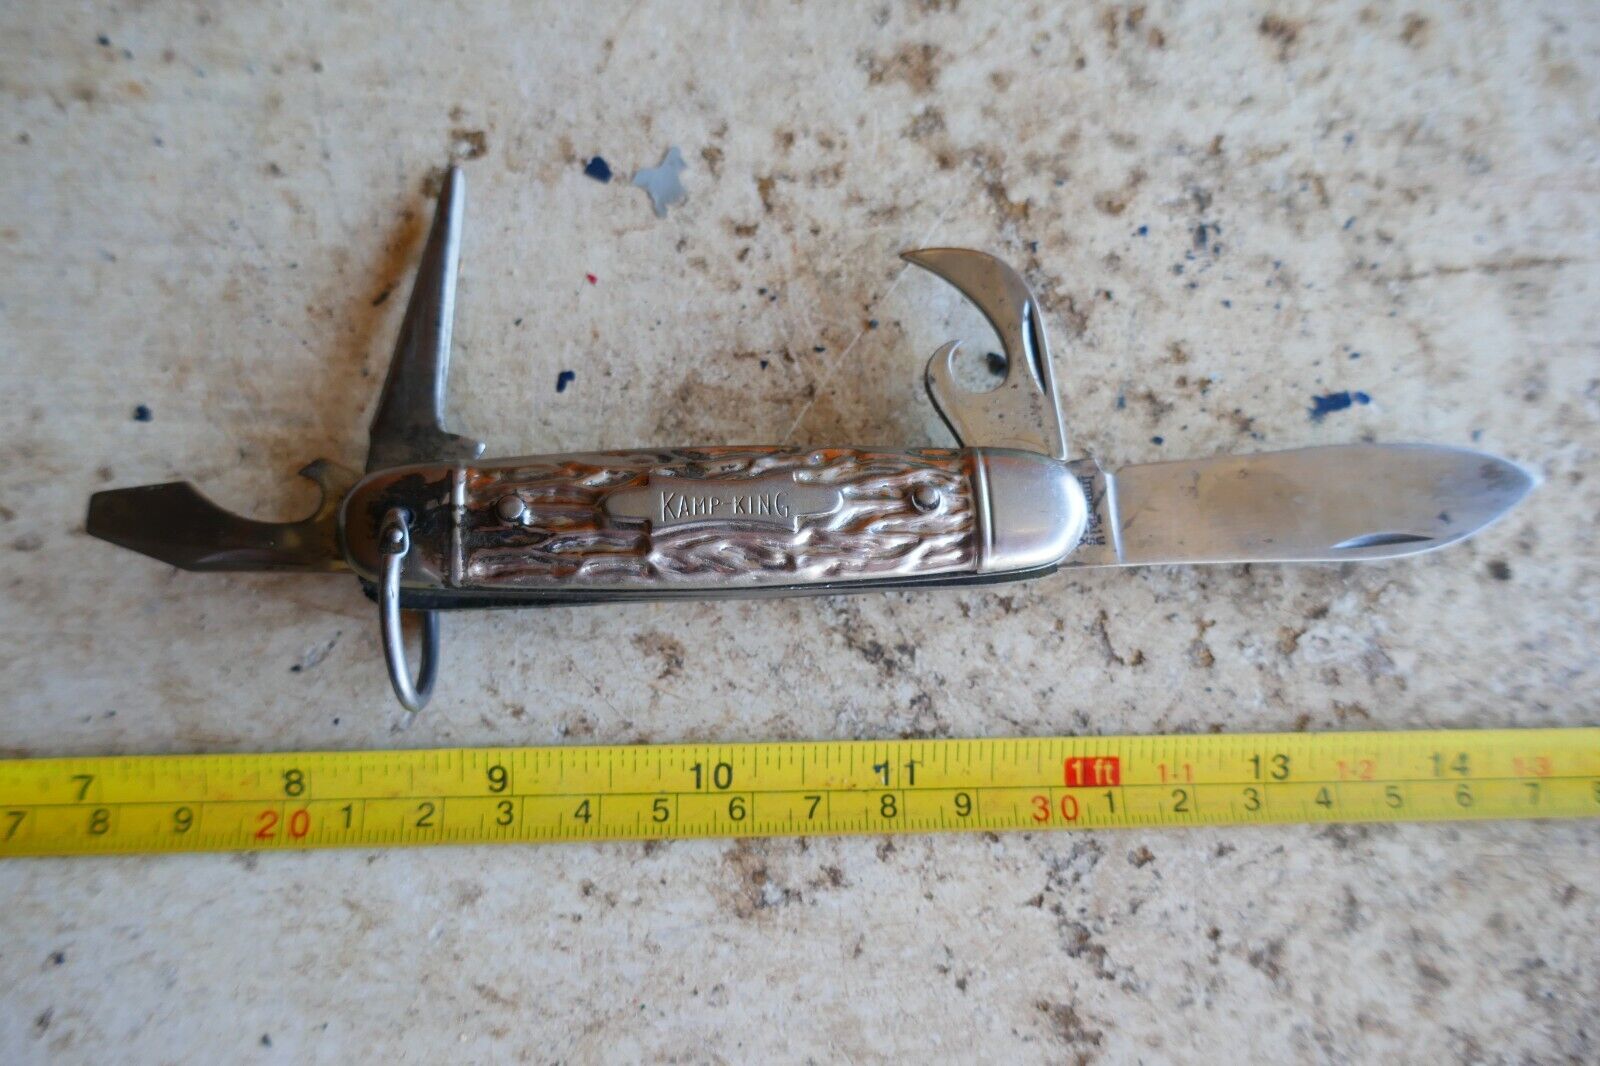 Vintage Pocket Utility Knife Kamp King Imperial USA Lot 24-19-2